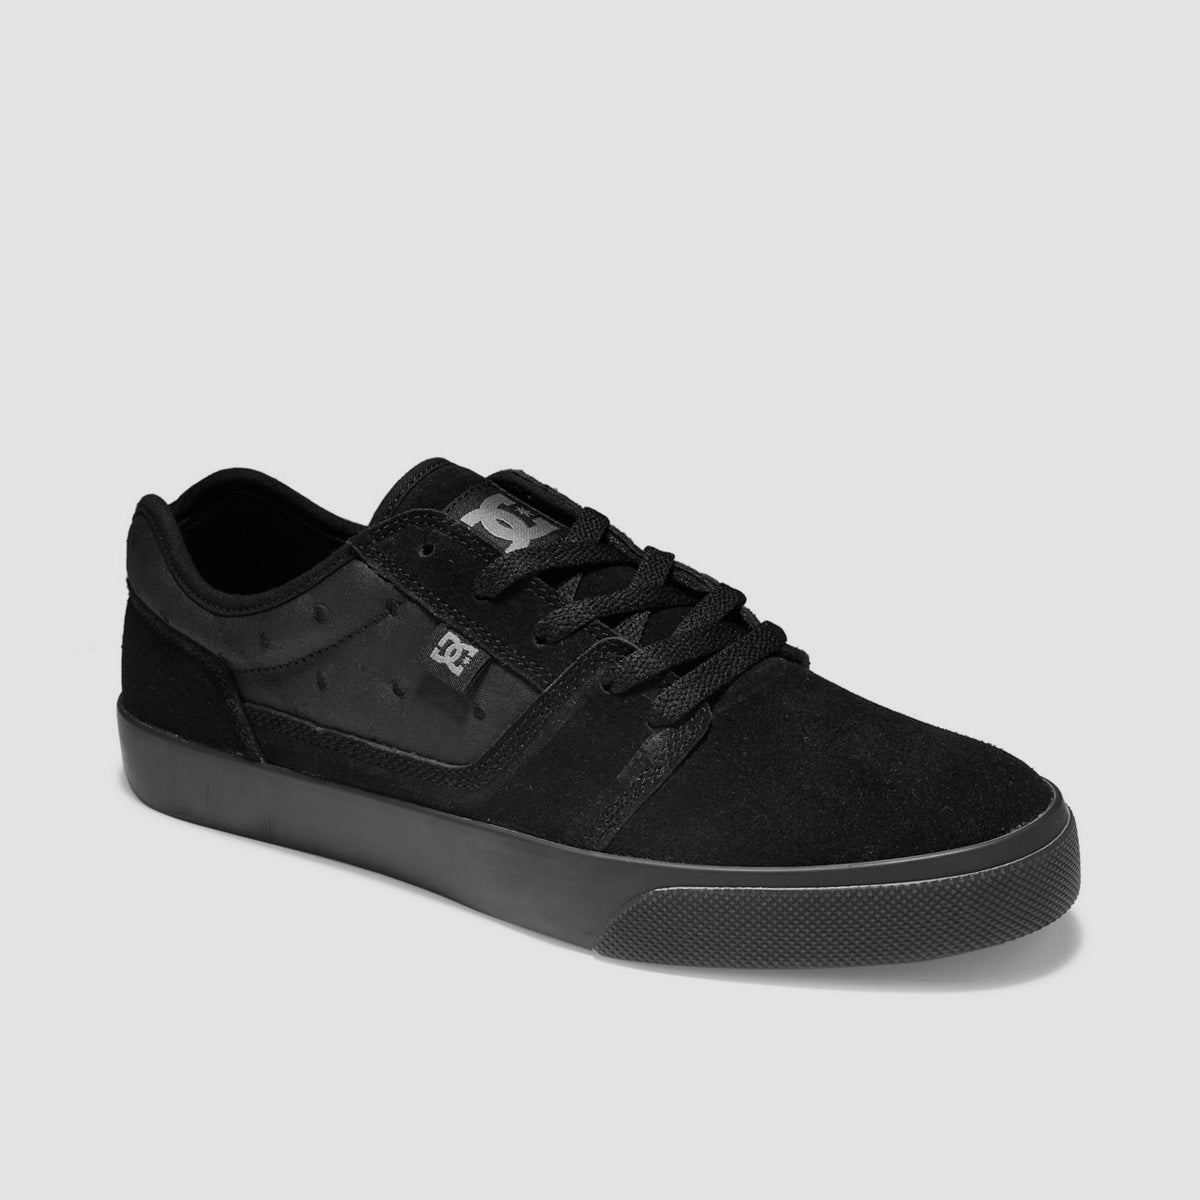 DC Tonik SE Shoes - Black/Black/Black